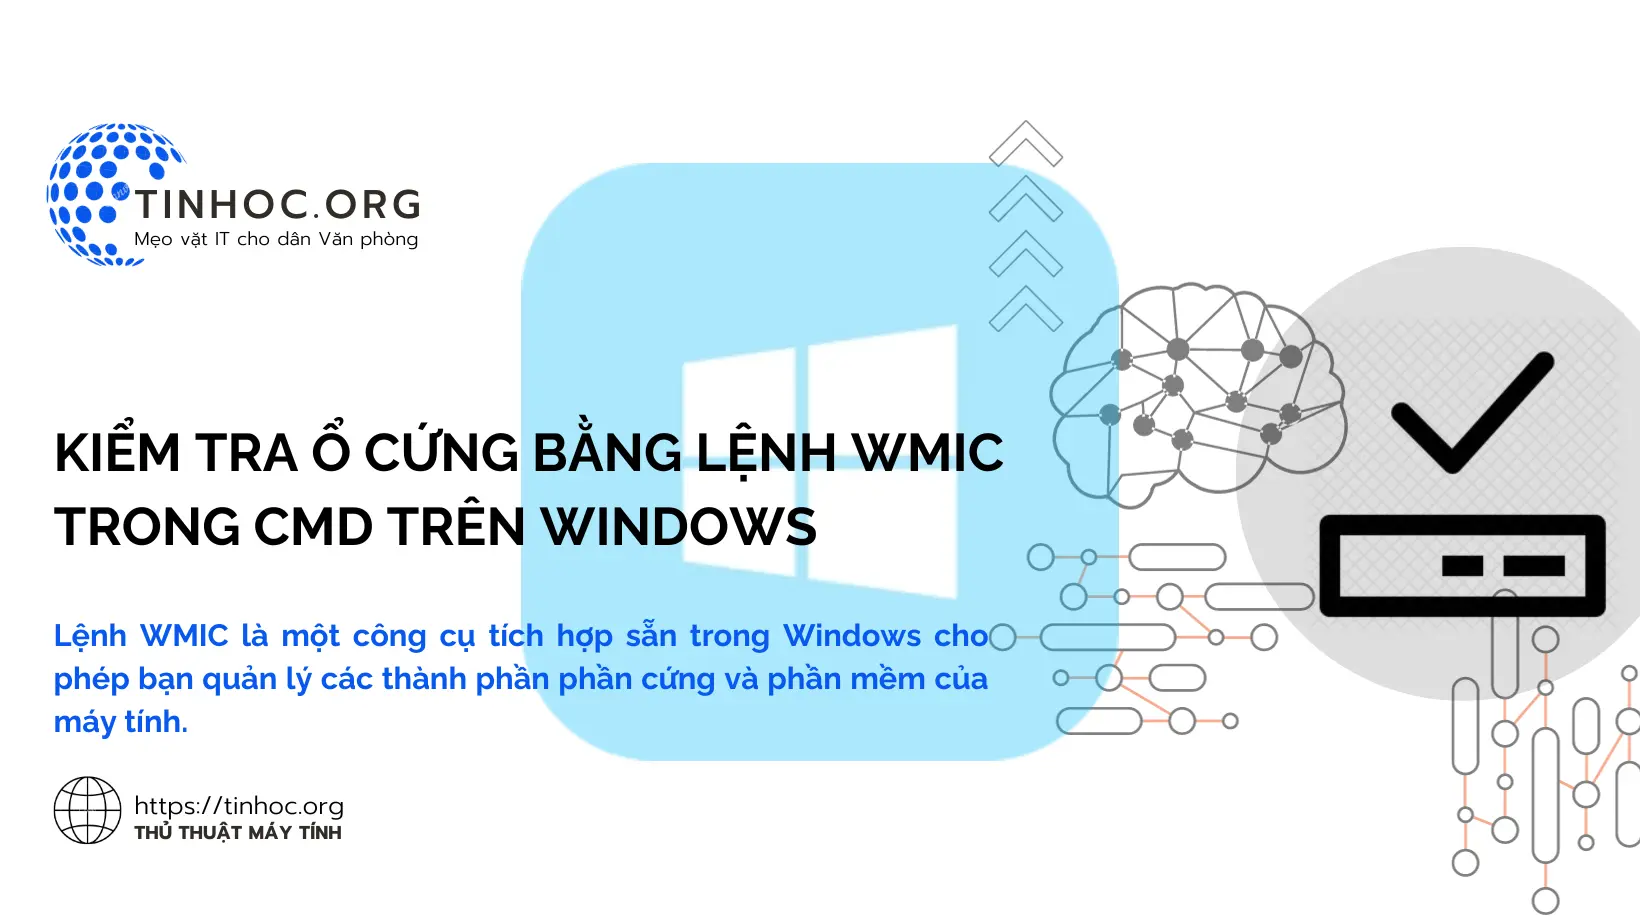 Lệnh WMIC là một công cụ tích hợp sẵn trong Windows cho phép bạn quản lý các thành phần phần cứng và phần mềm của máy tính.